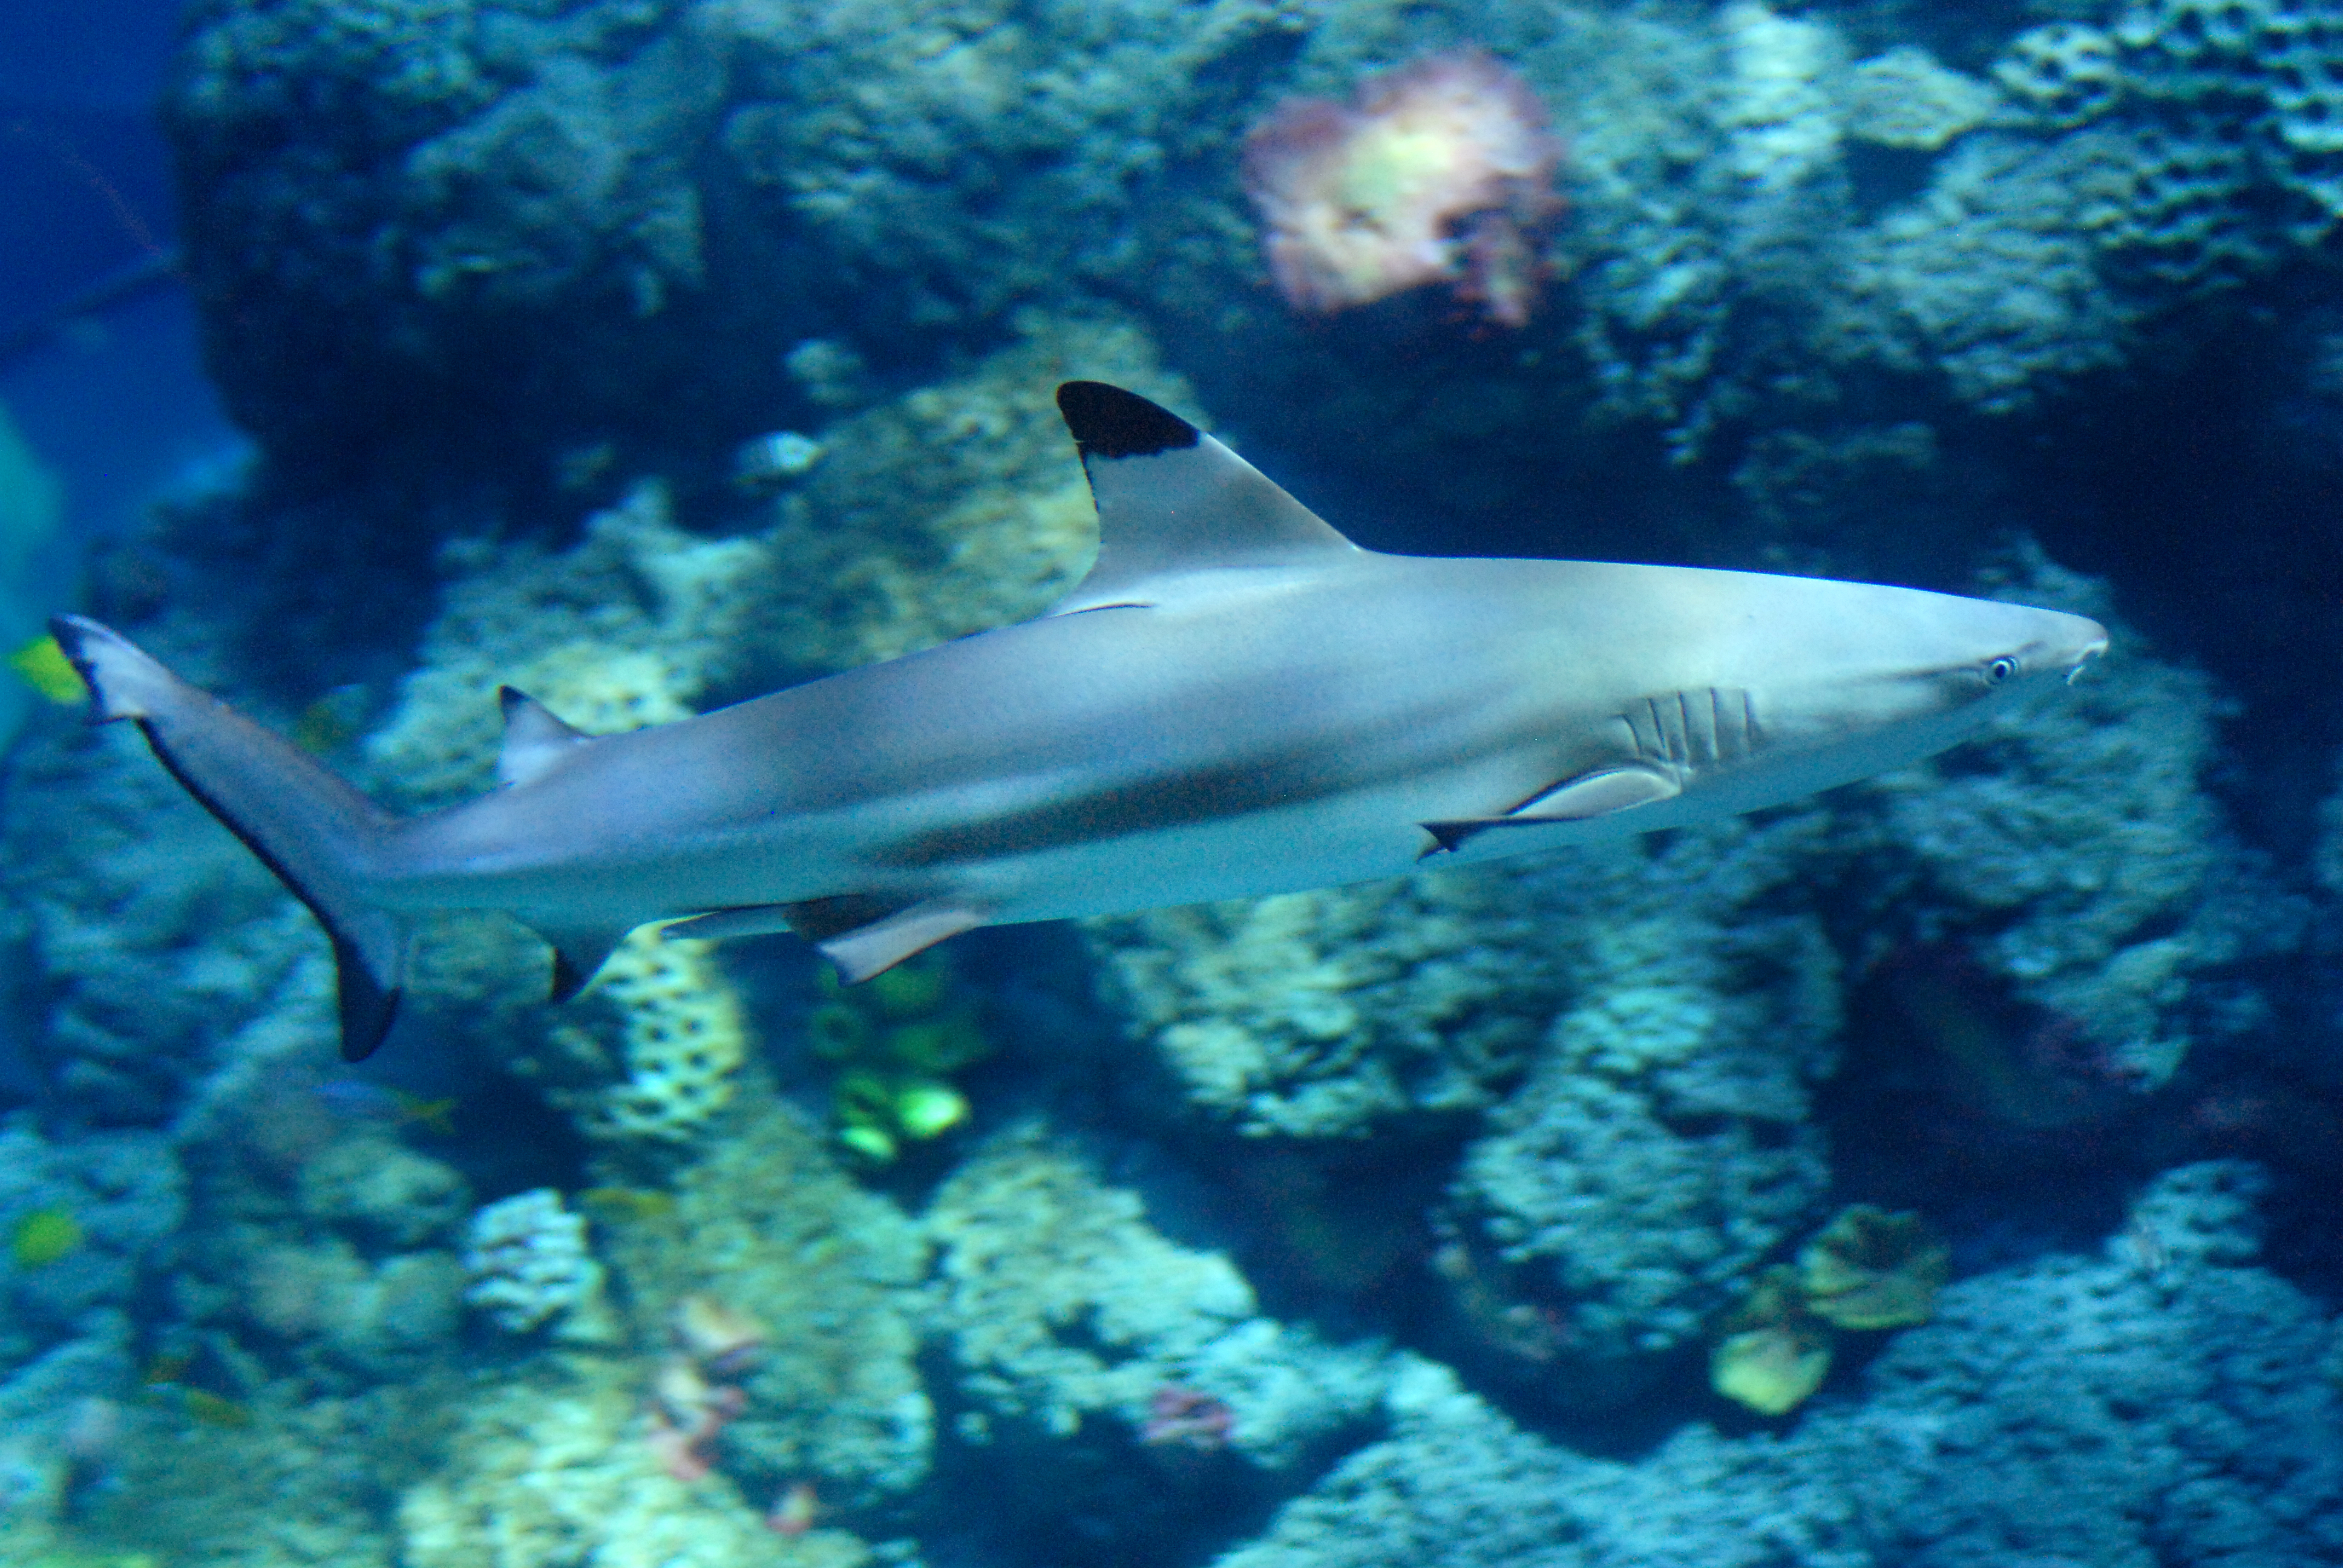 Gardaland SEA LIFE Aquarium - Blacktip Reef Shark